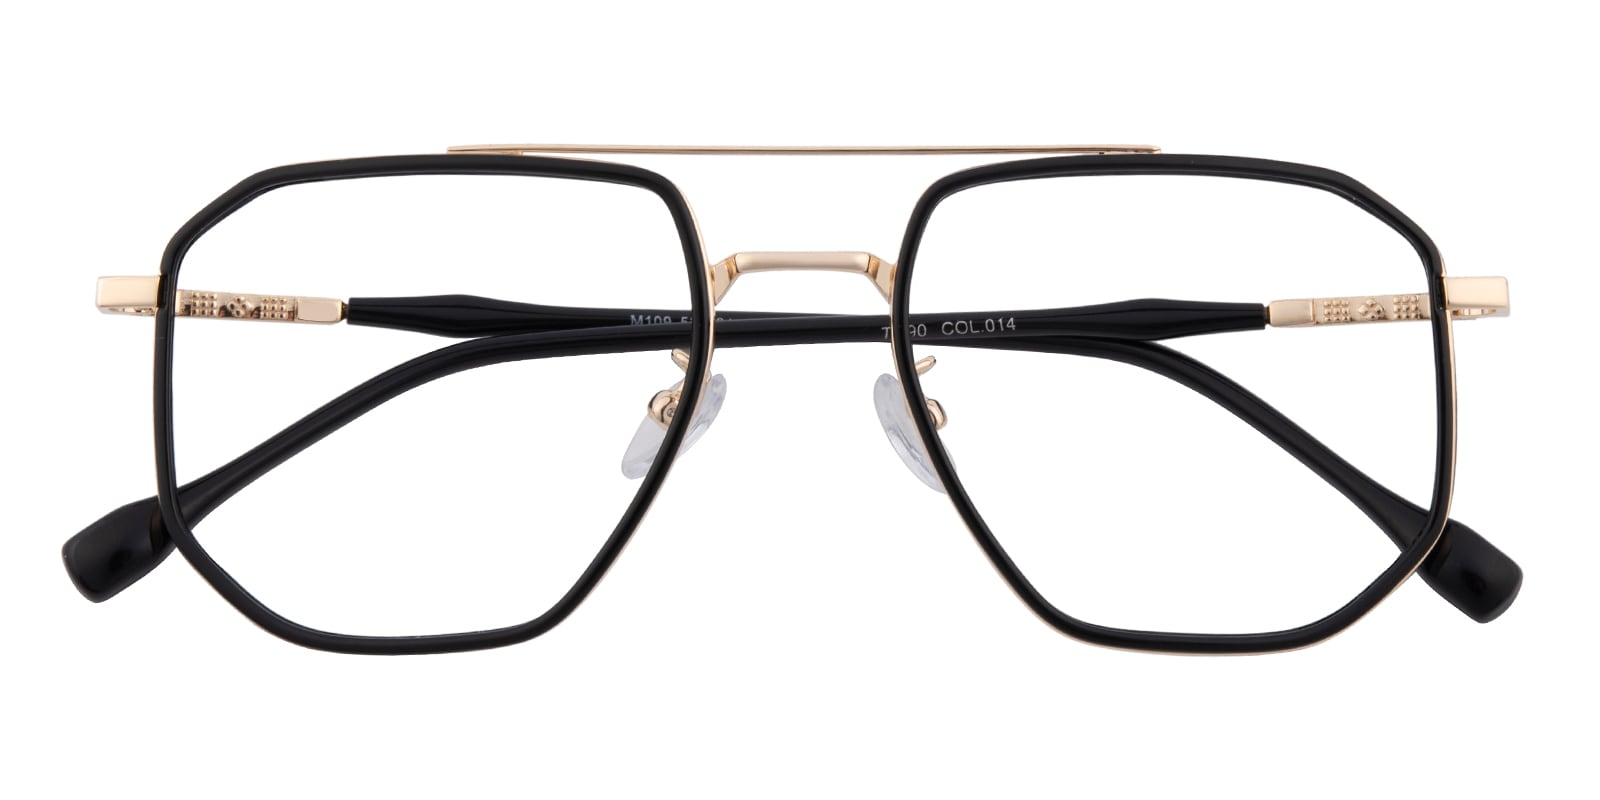 Aviator Eyeglasses, Full Frame Black/Golden TR90|Metal - FP2663